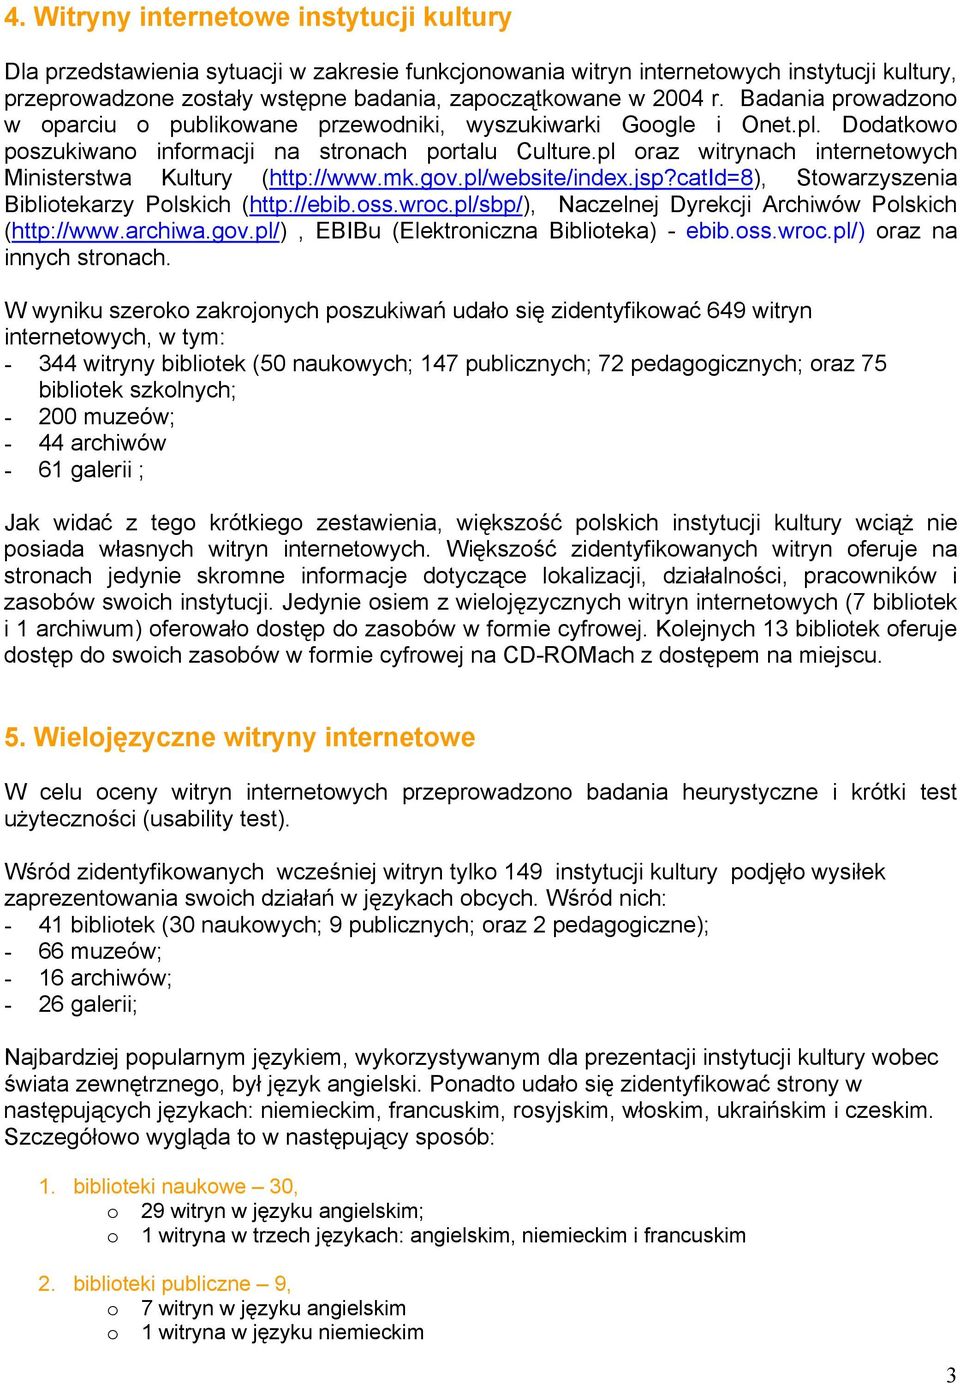 pl oraz witrynach internetowych Ministerstwa Kultury (http://www.mk.gov.pl/website/index.jsp?catid=8), Stowarzyszenia Bibliotekarzy Polskich (http://ebib.oss.wroc.